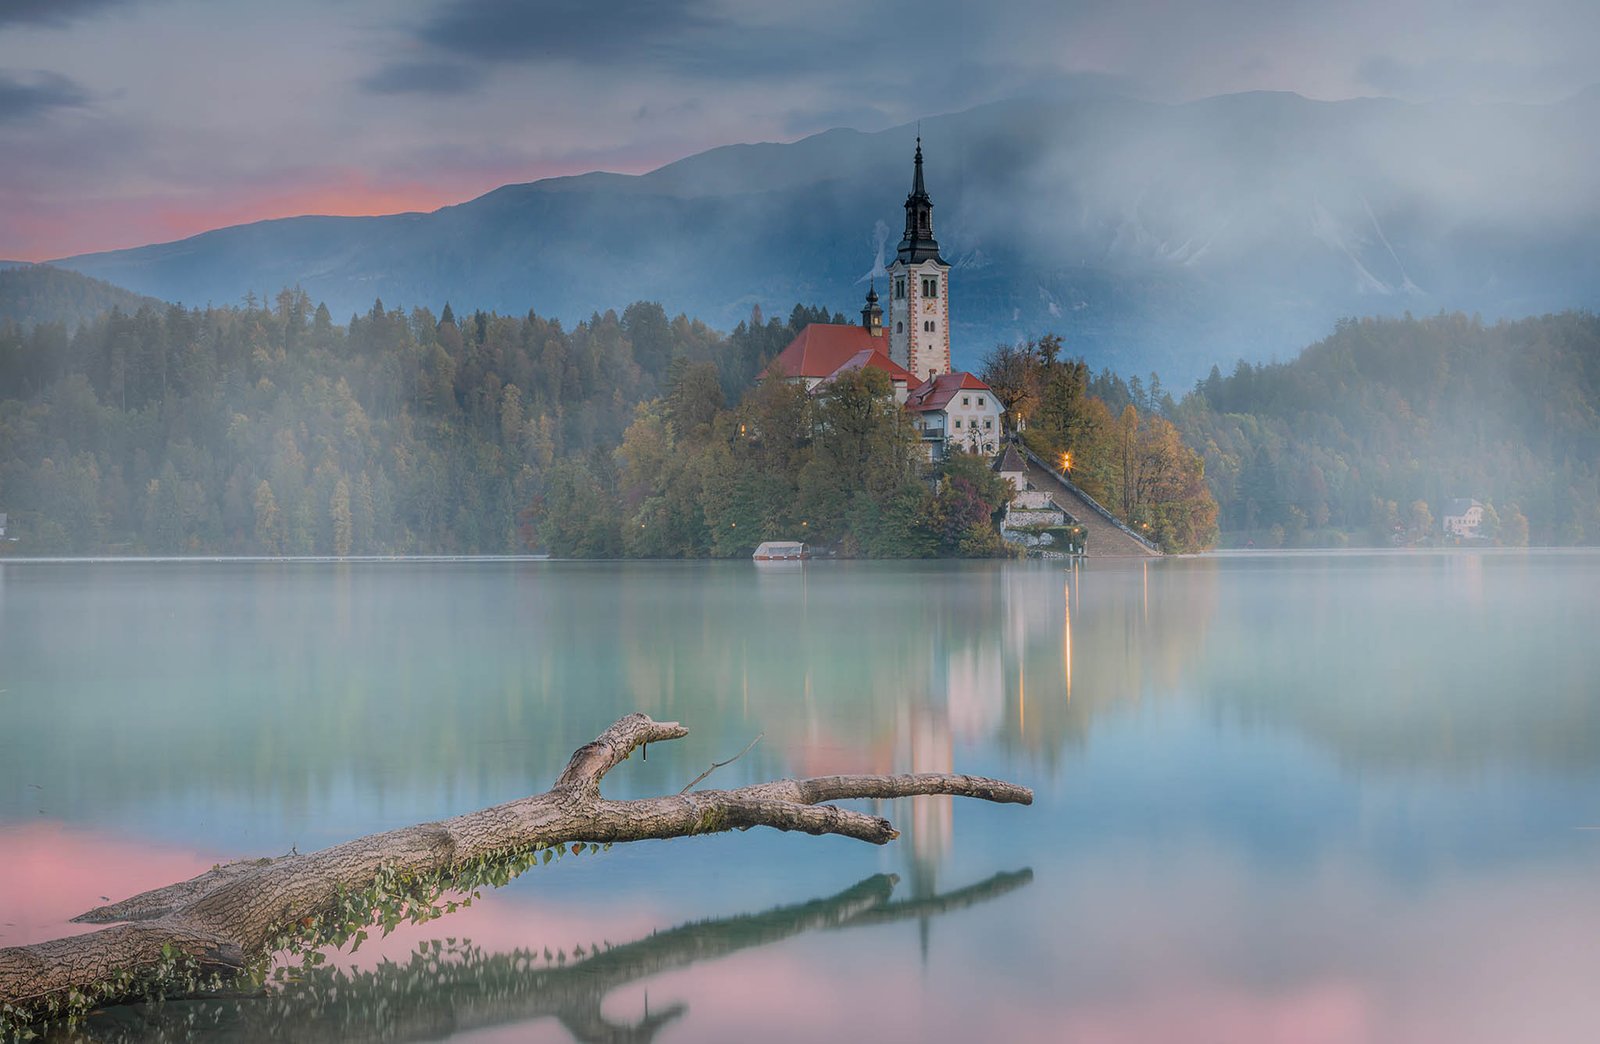 Lake Bled island church, Slovenia.